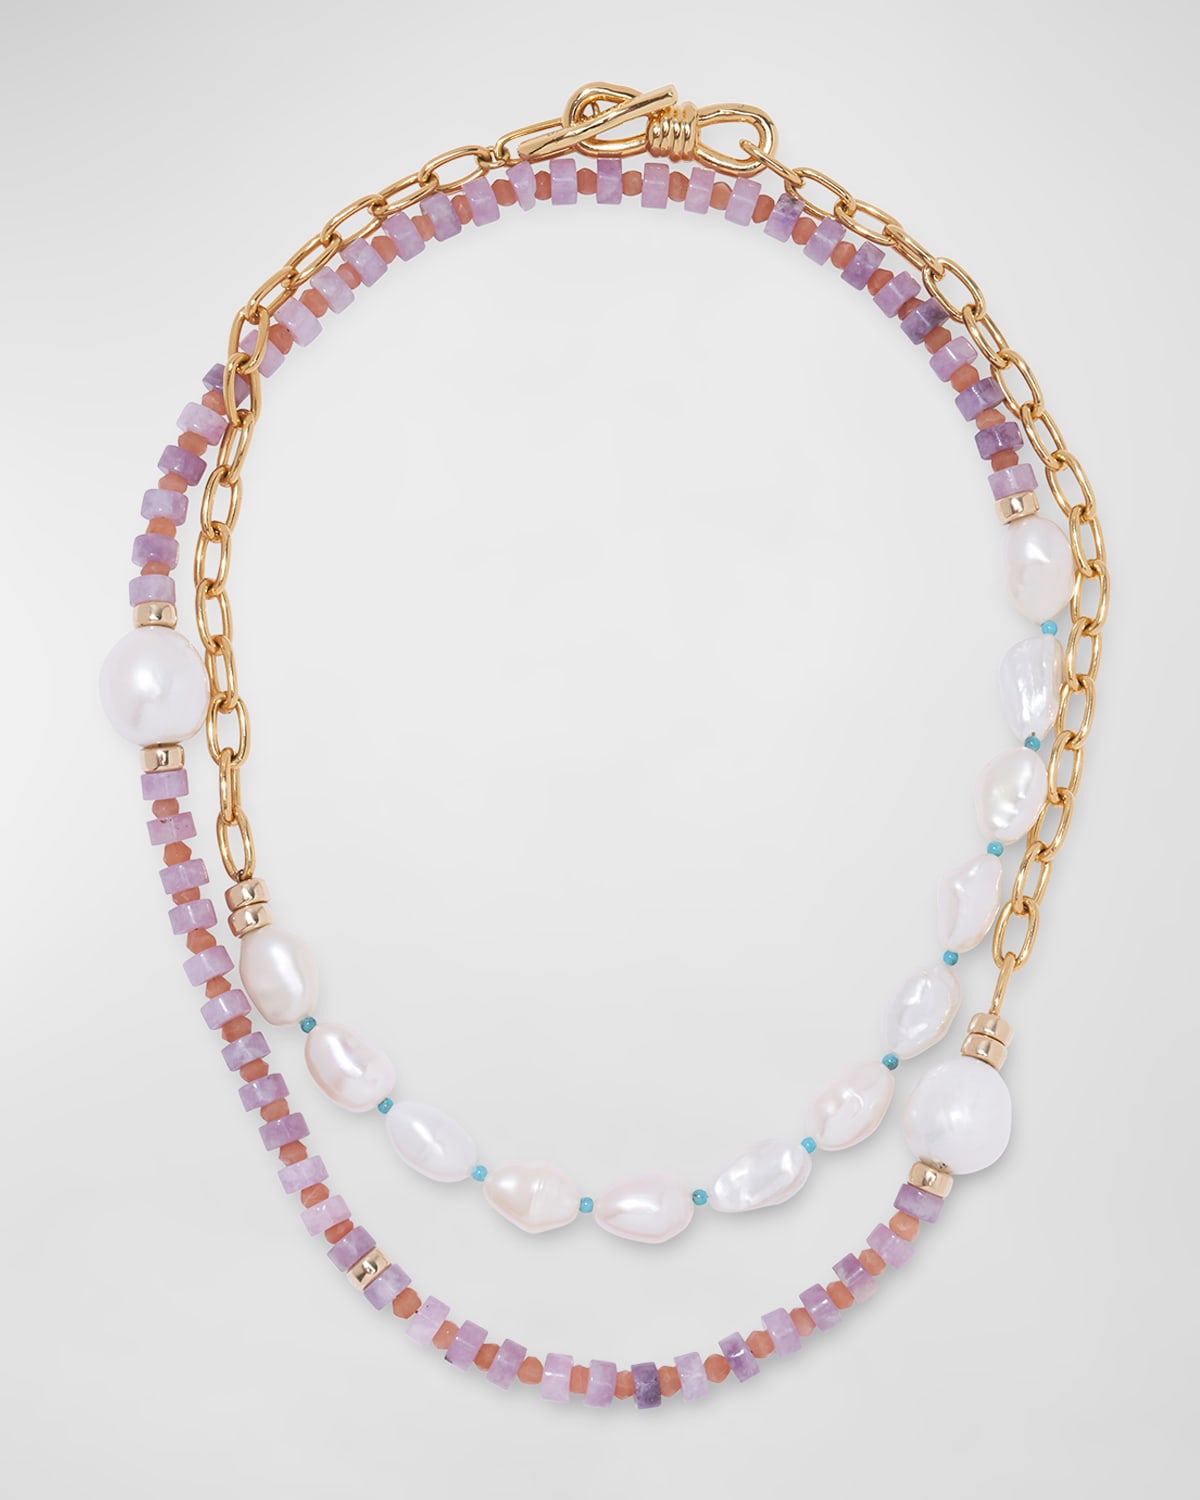 Lizzie Fortunato Porto Covo Necklace with Pearls